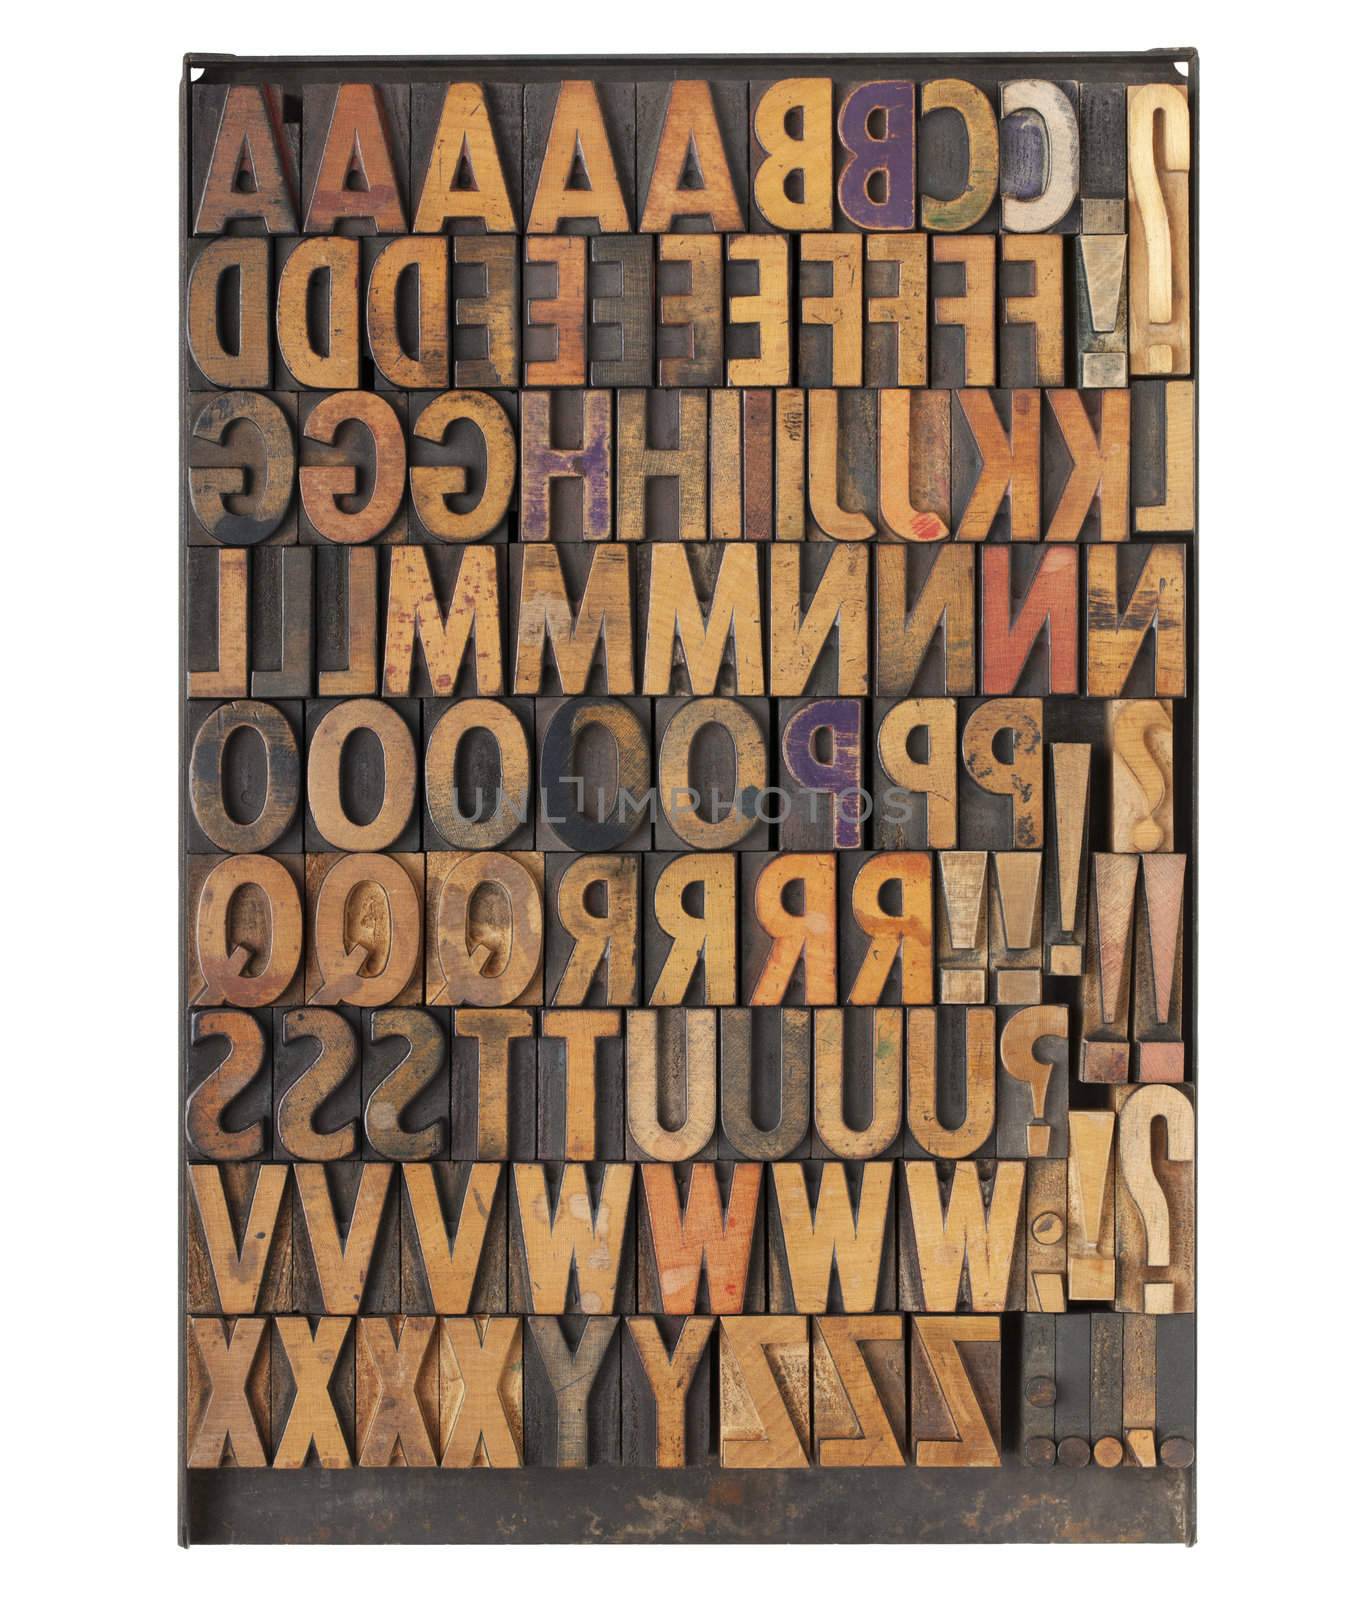 vintage letterpress printing blocks by PixelsAway